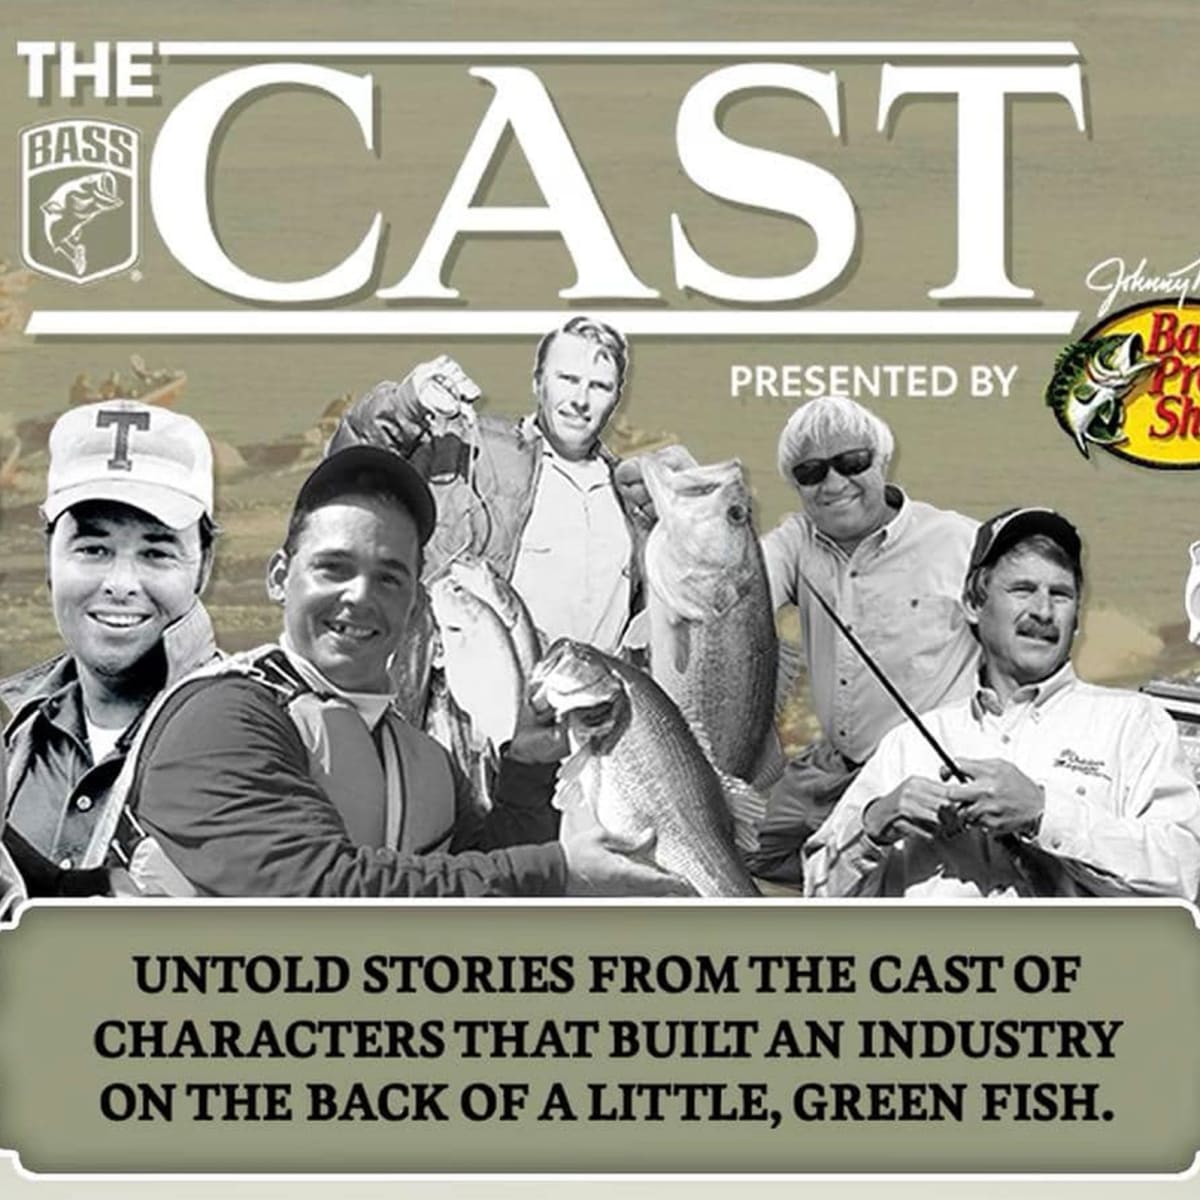 Bassmaster's The Cast: Documentary Review - Men's Journal